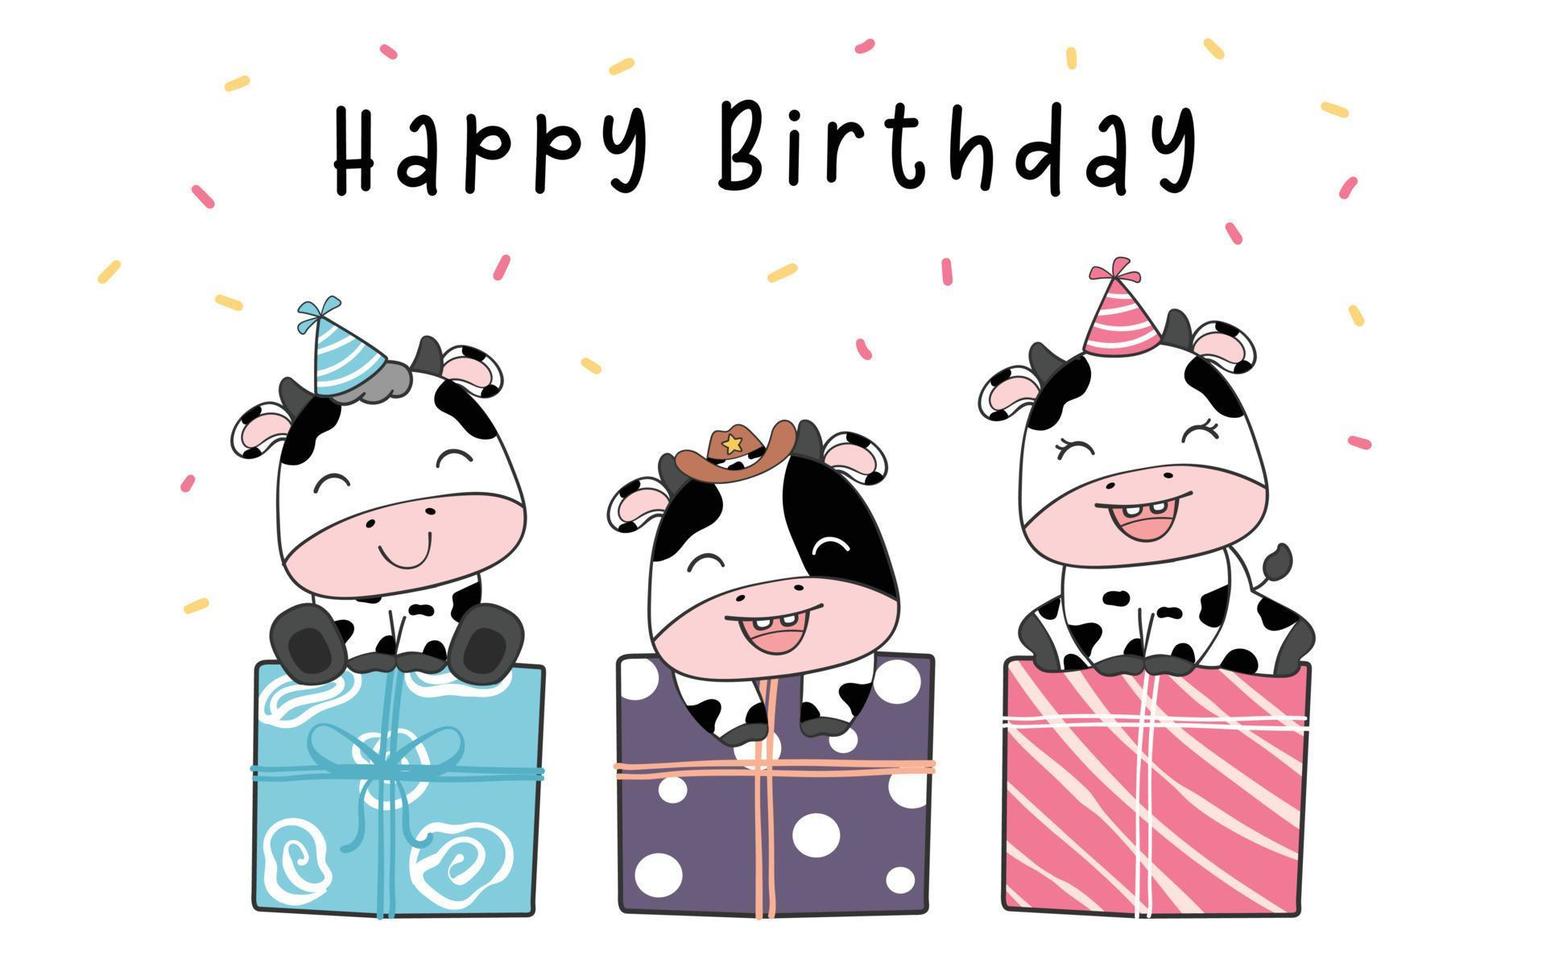 groep van diversiteit drie schattige baby koe kalf op huidige dozen, gelukkige verjaardag, schattige boerderij dier cartoon karakter kwekerij tekening illustratie vector